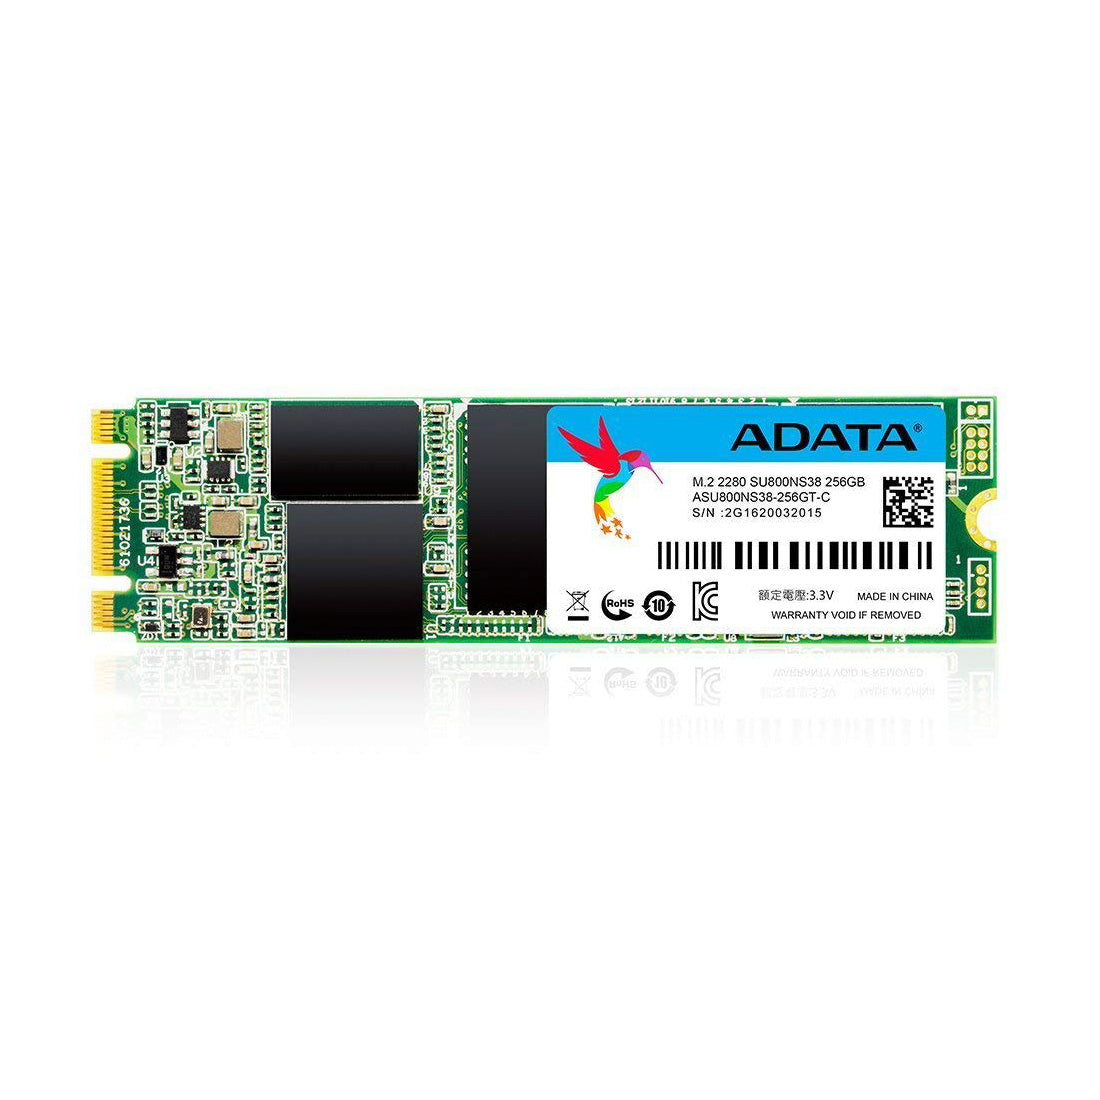 ADATA अल्टीमेट SU800 256GB M.2 2280 इंटरनल SSD